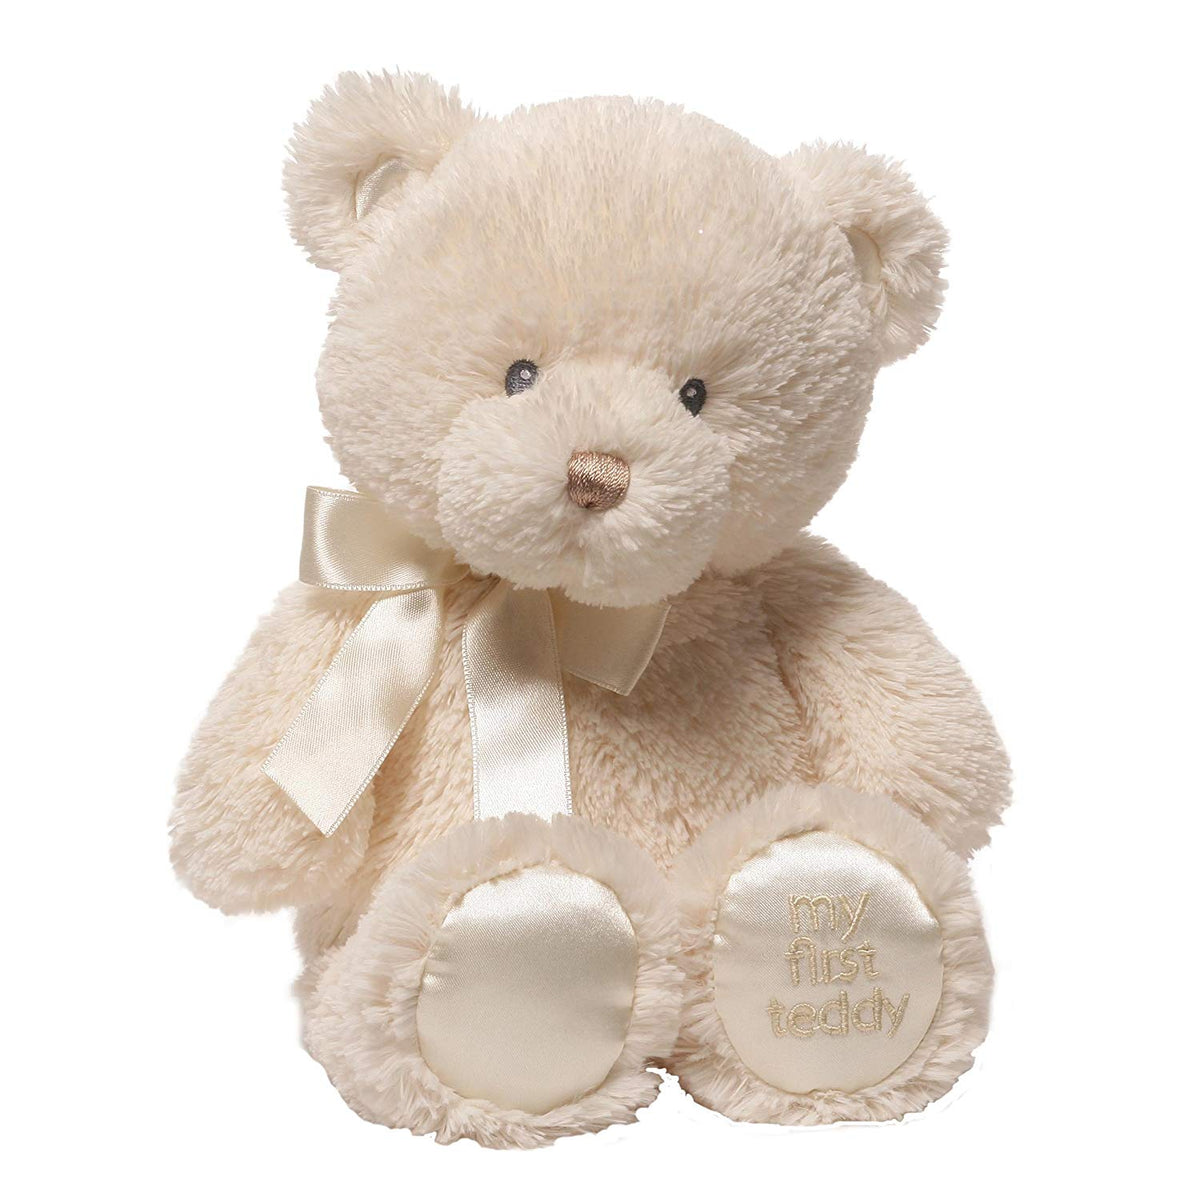 baby's first teddy bear